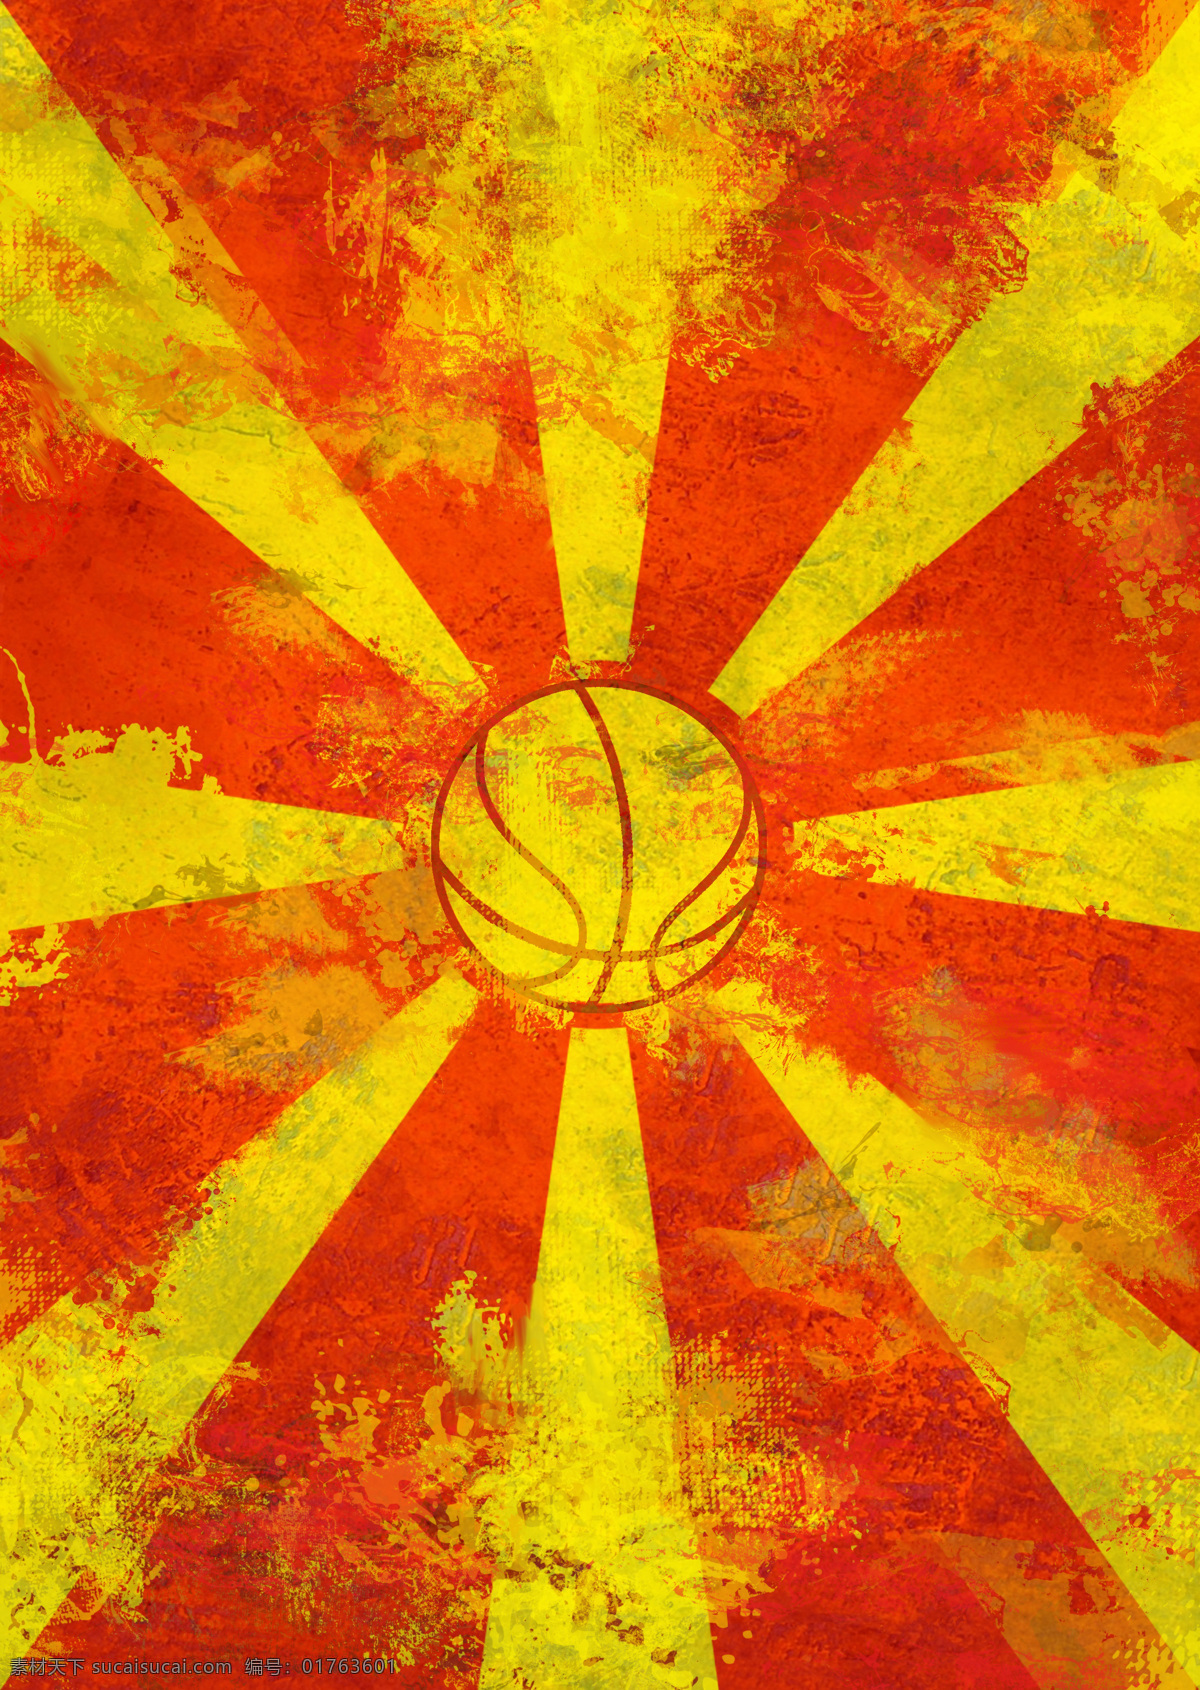 背景底纹 底纹边框 红黄色 篮球 篮球背景 太阳 背景 设计素材 模板下载 蓝旗火 psd源文件